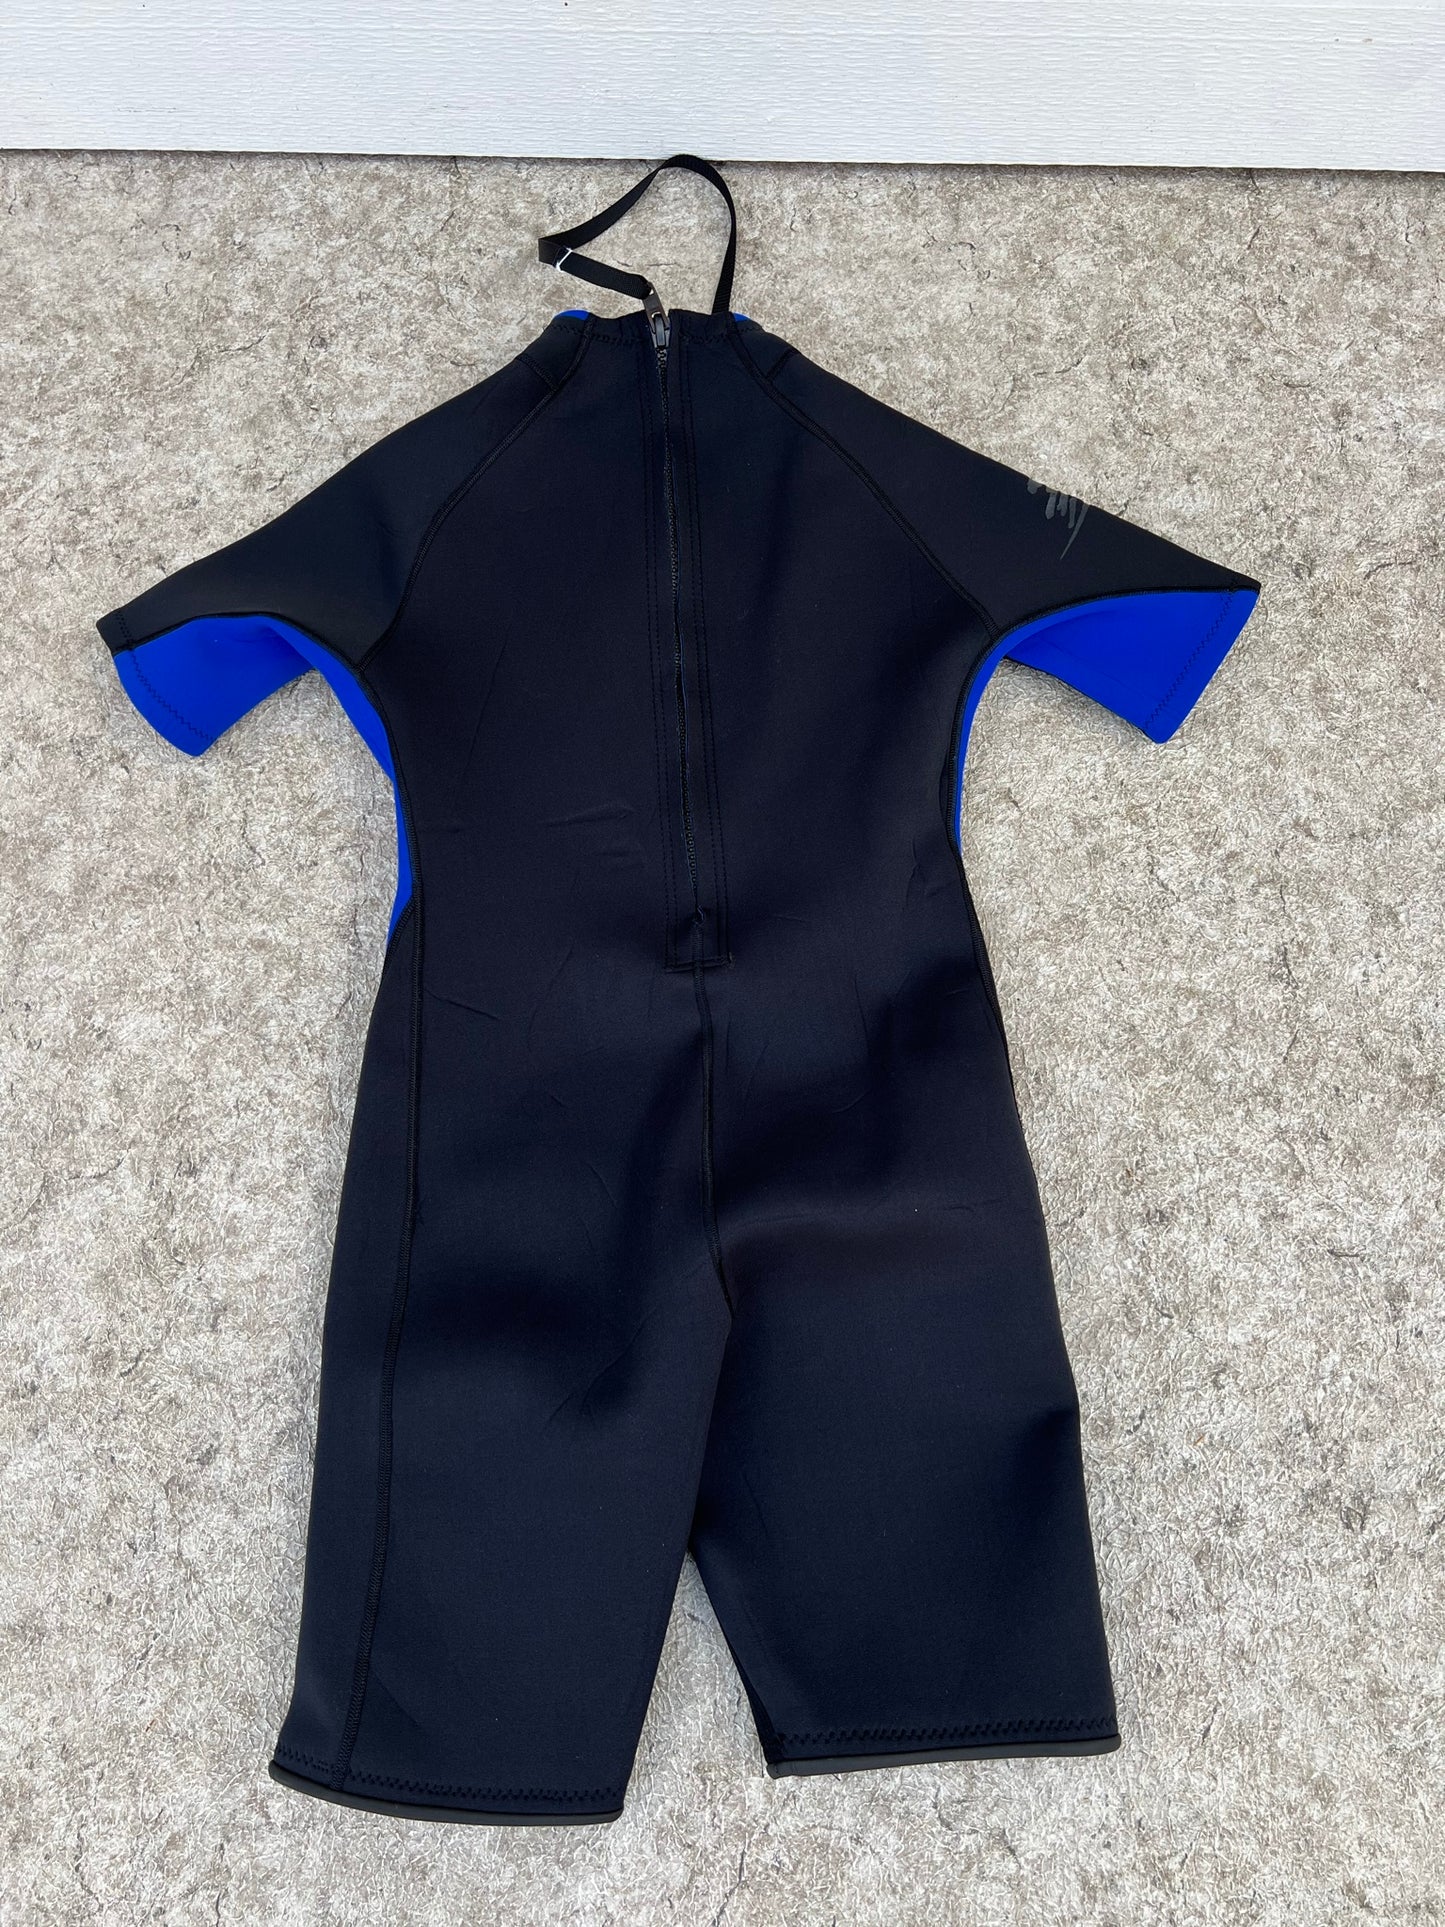 Wetsuit Men's Size Medium HO Kidder USA 2-3 mm Neoprene Black Blue As New